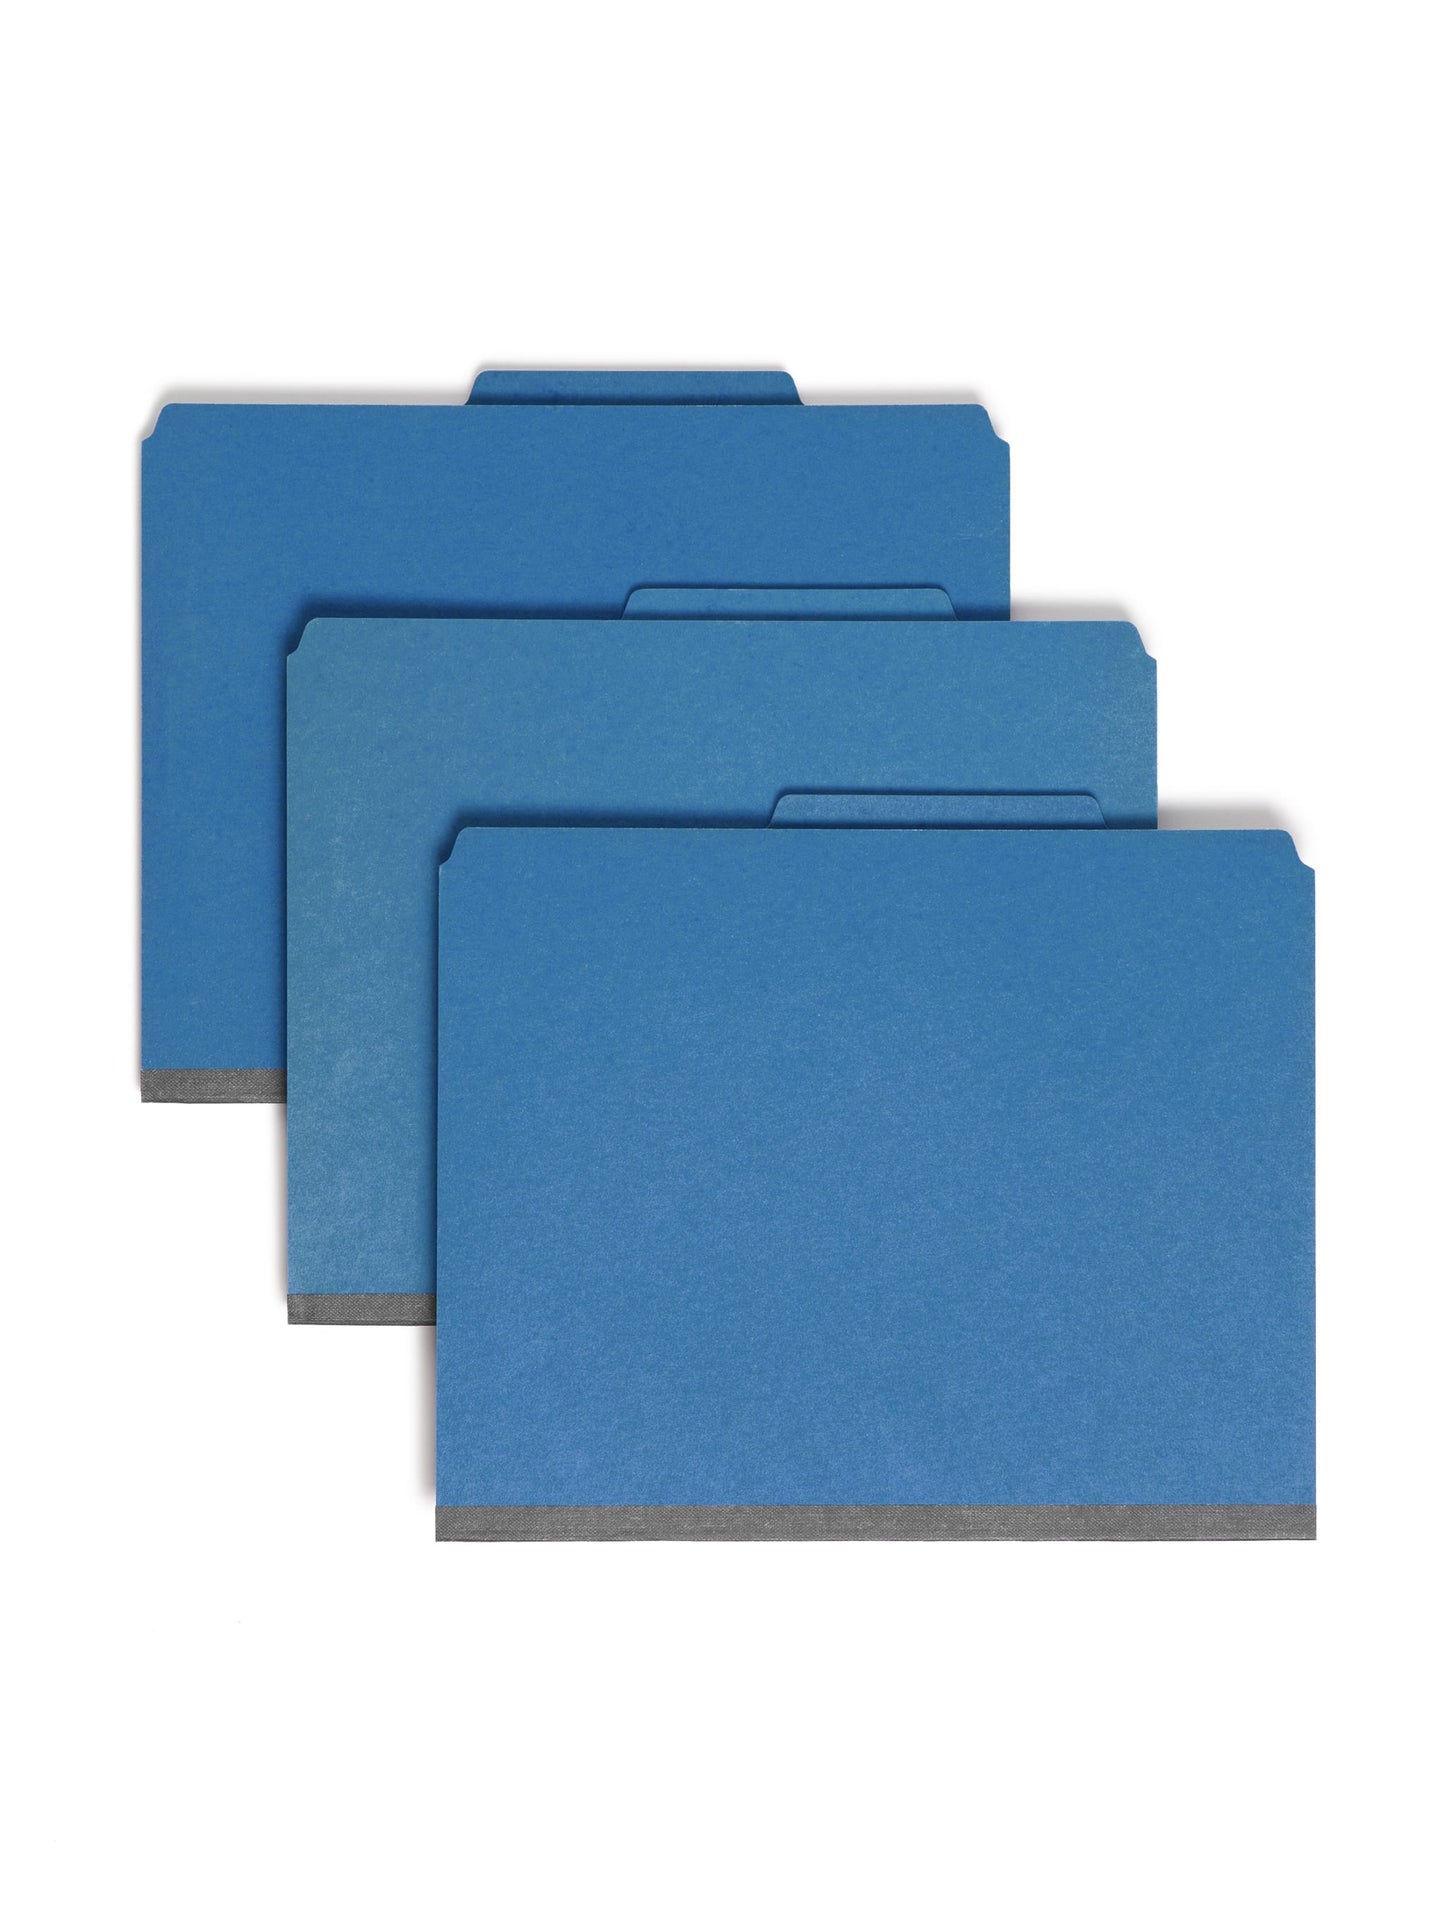 SafeSHIELD® Pressboard Classification File Folders with Pocket Dividers, Dark Blue Color, Letter Size, Set of 0, 30086486140776